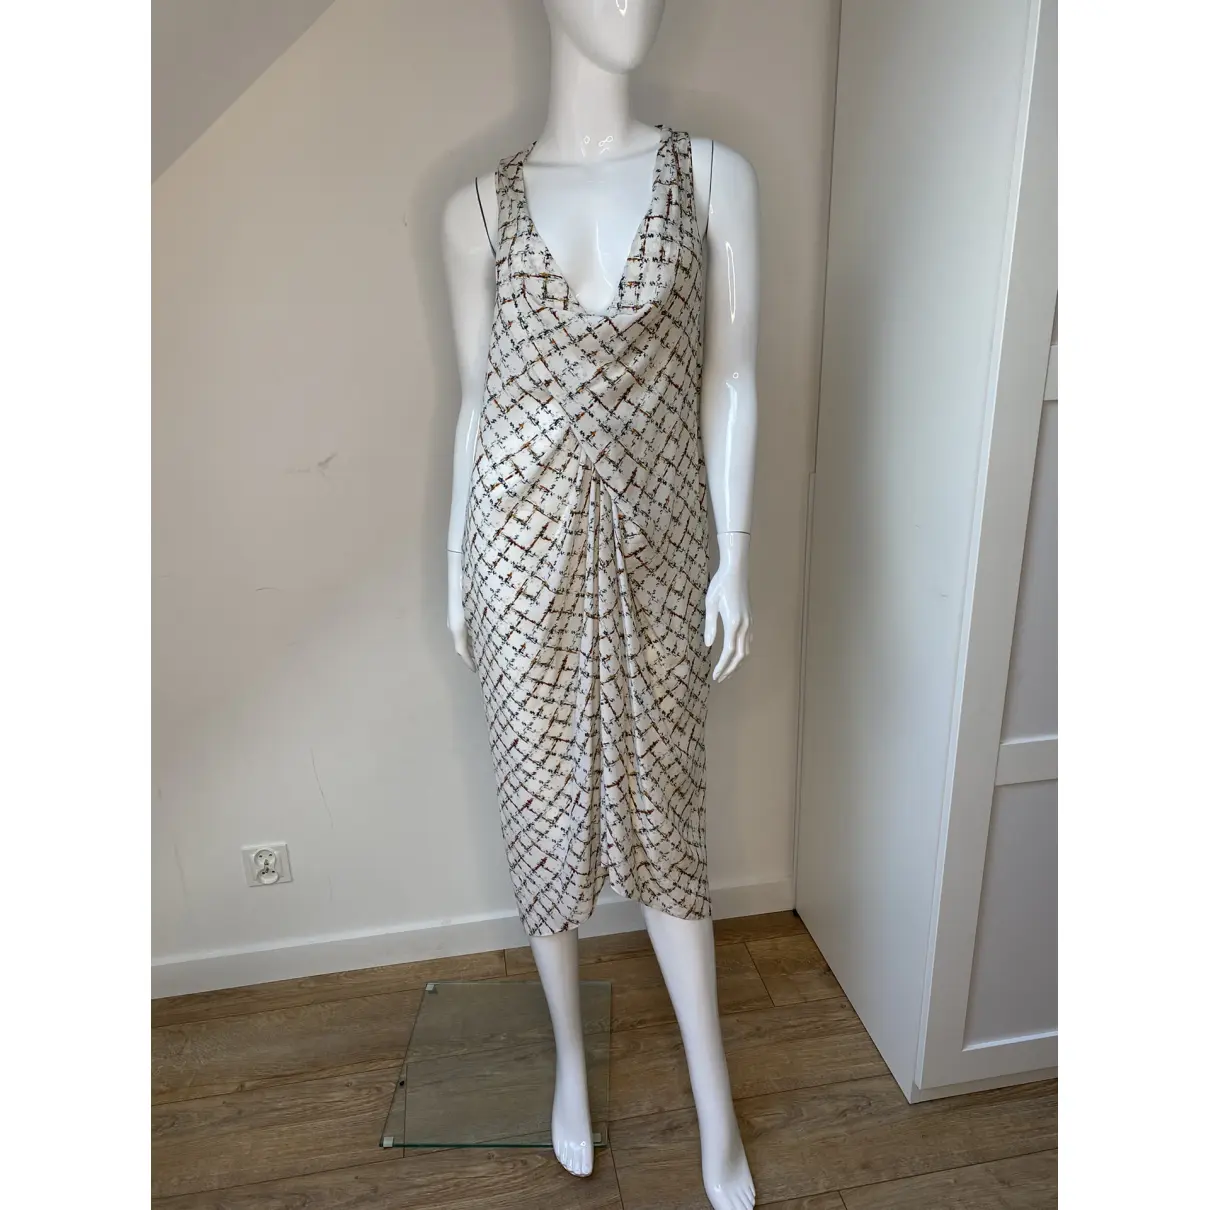 Buy Dawid Tomaszewski Silk mid-length dress online